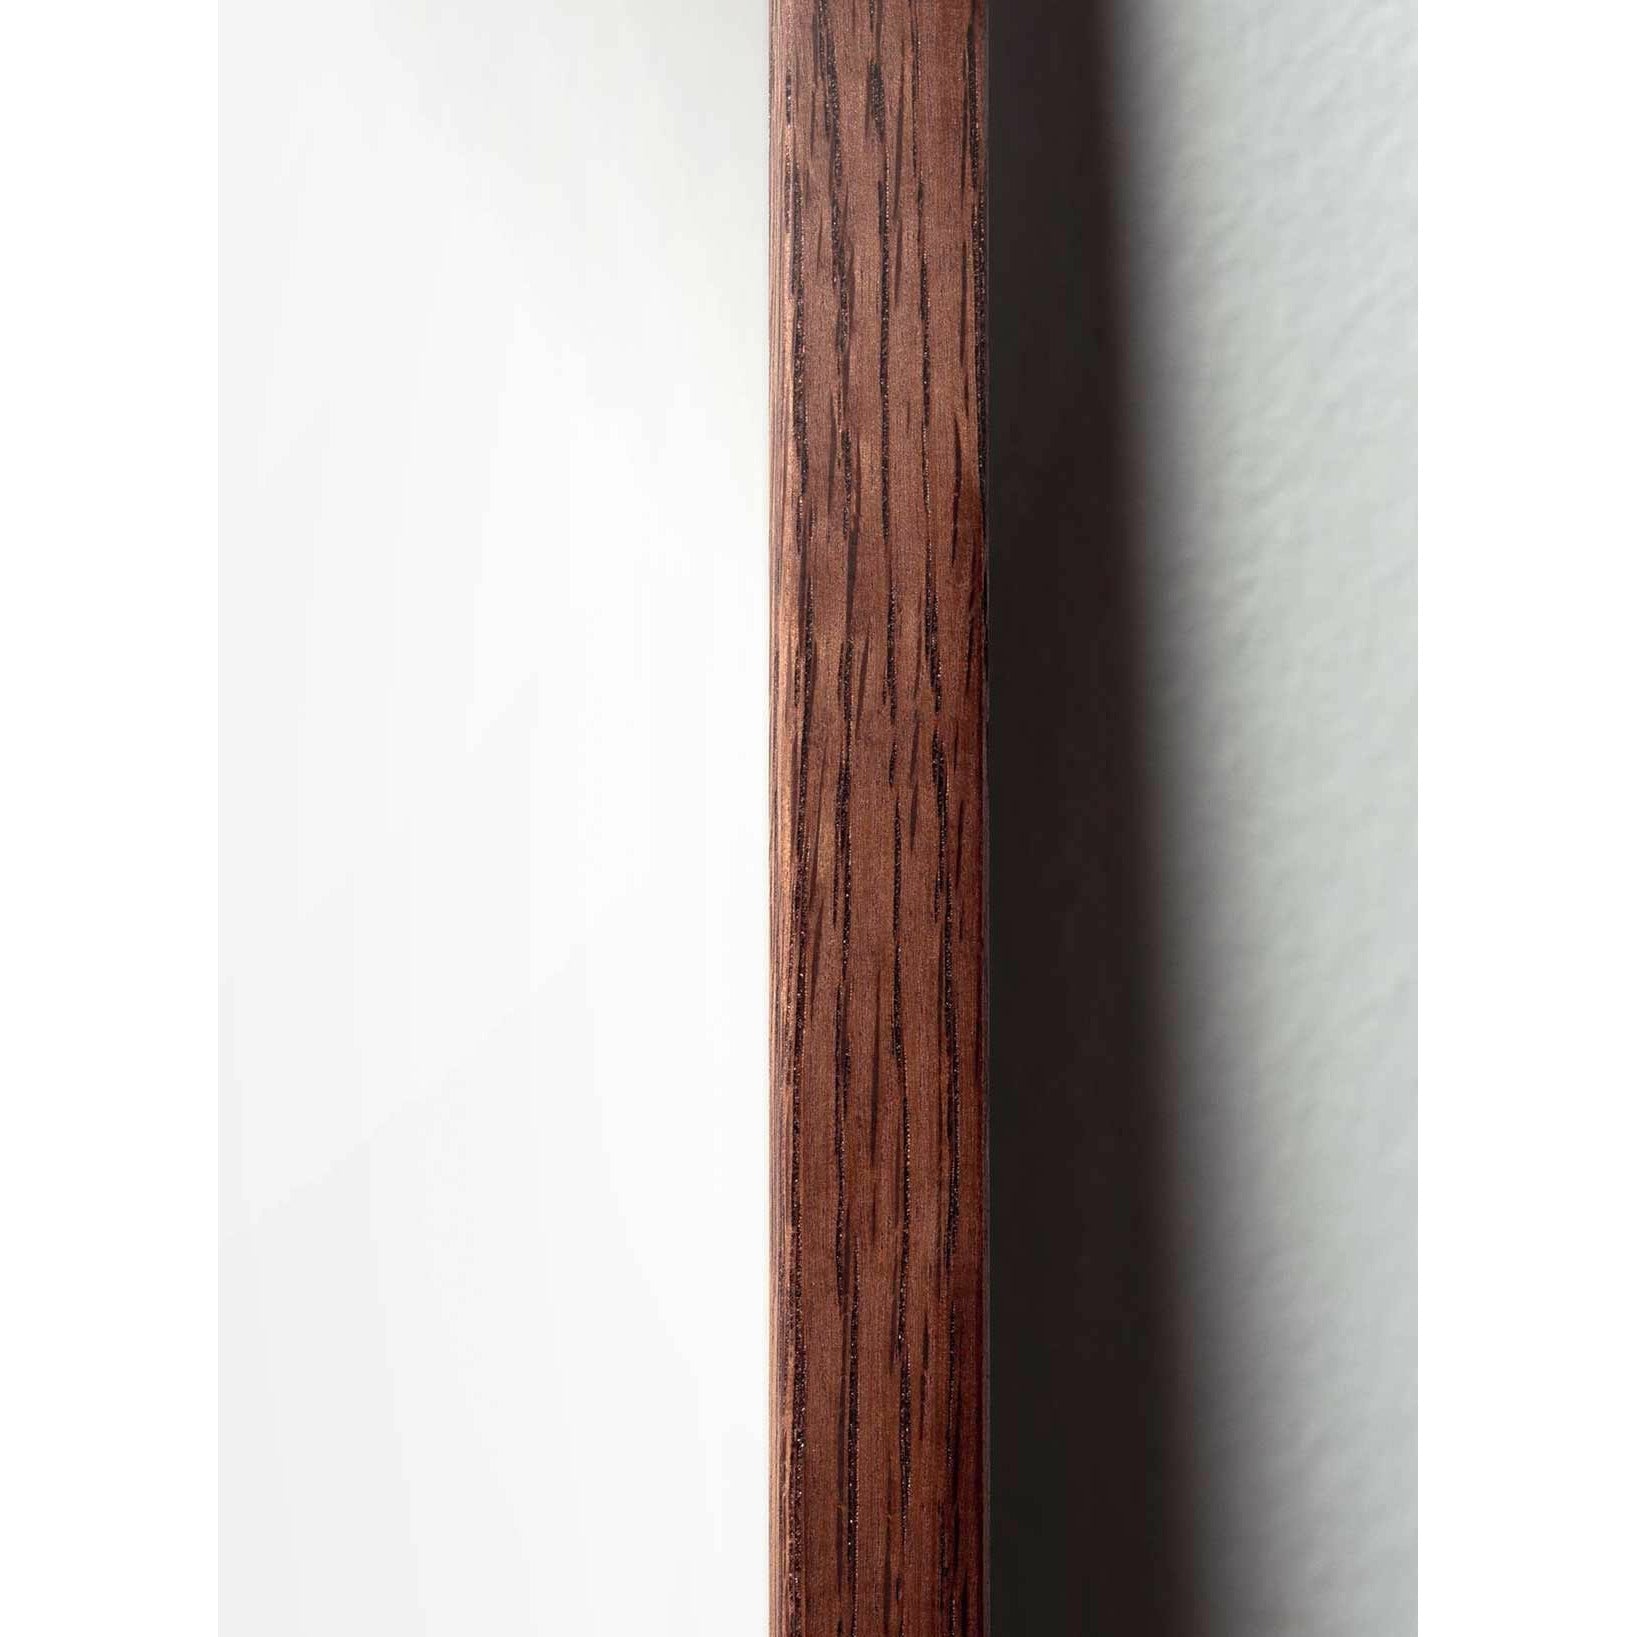 Póster de línea Swan de creación, marco de madera oscura A5, fondo blanco